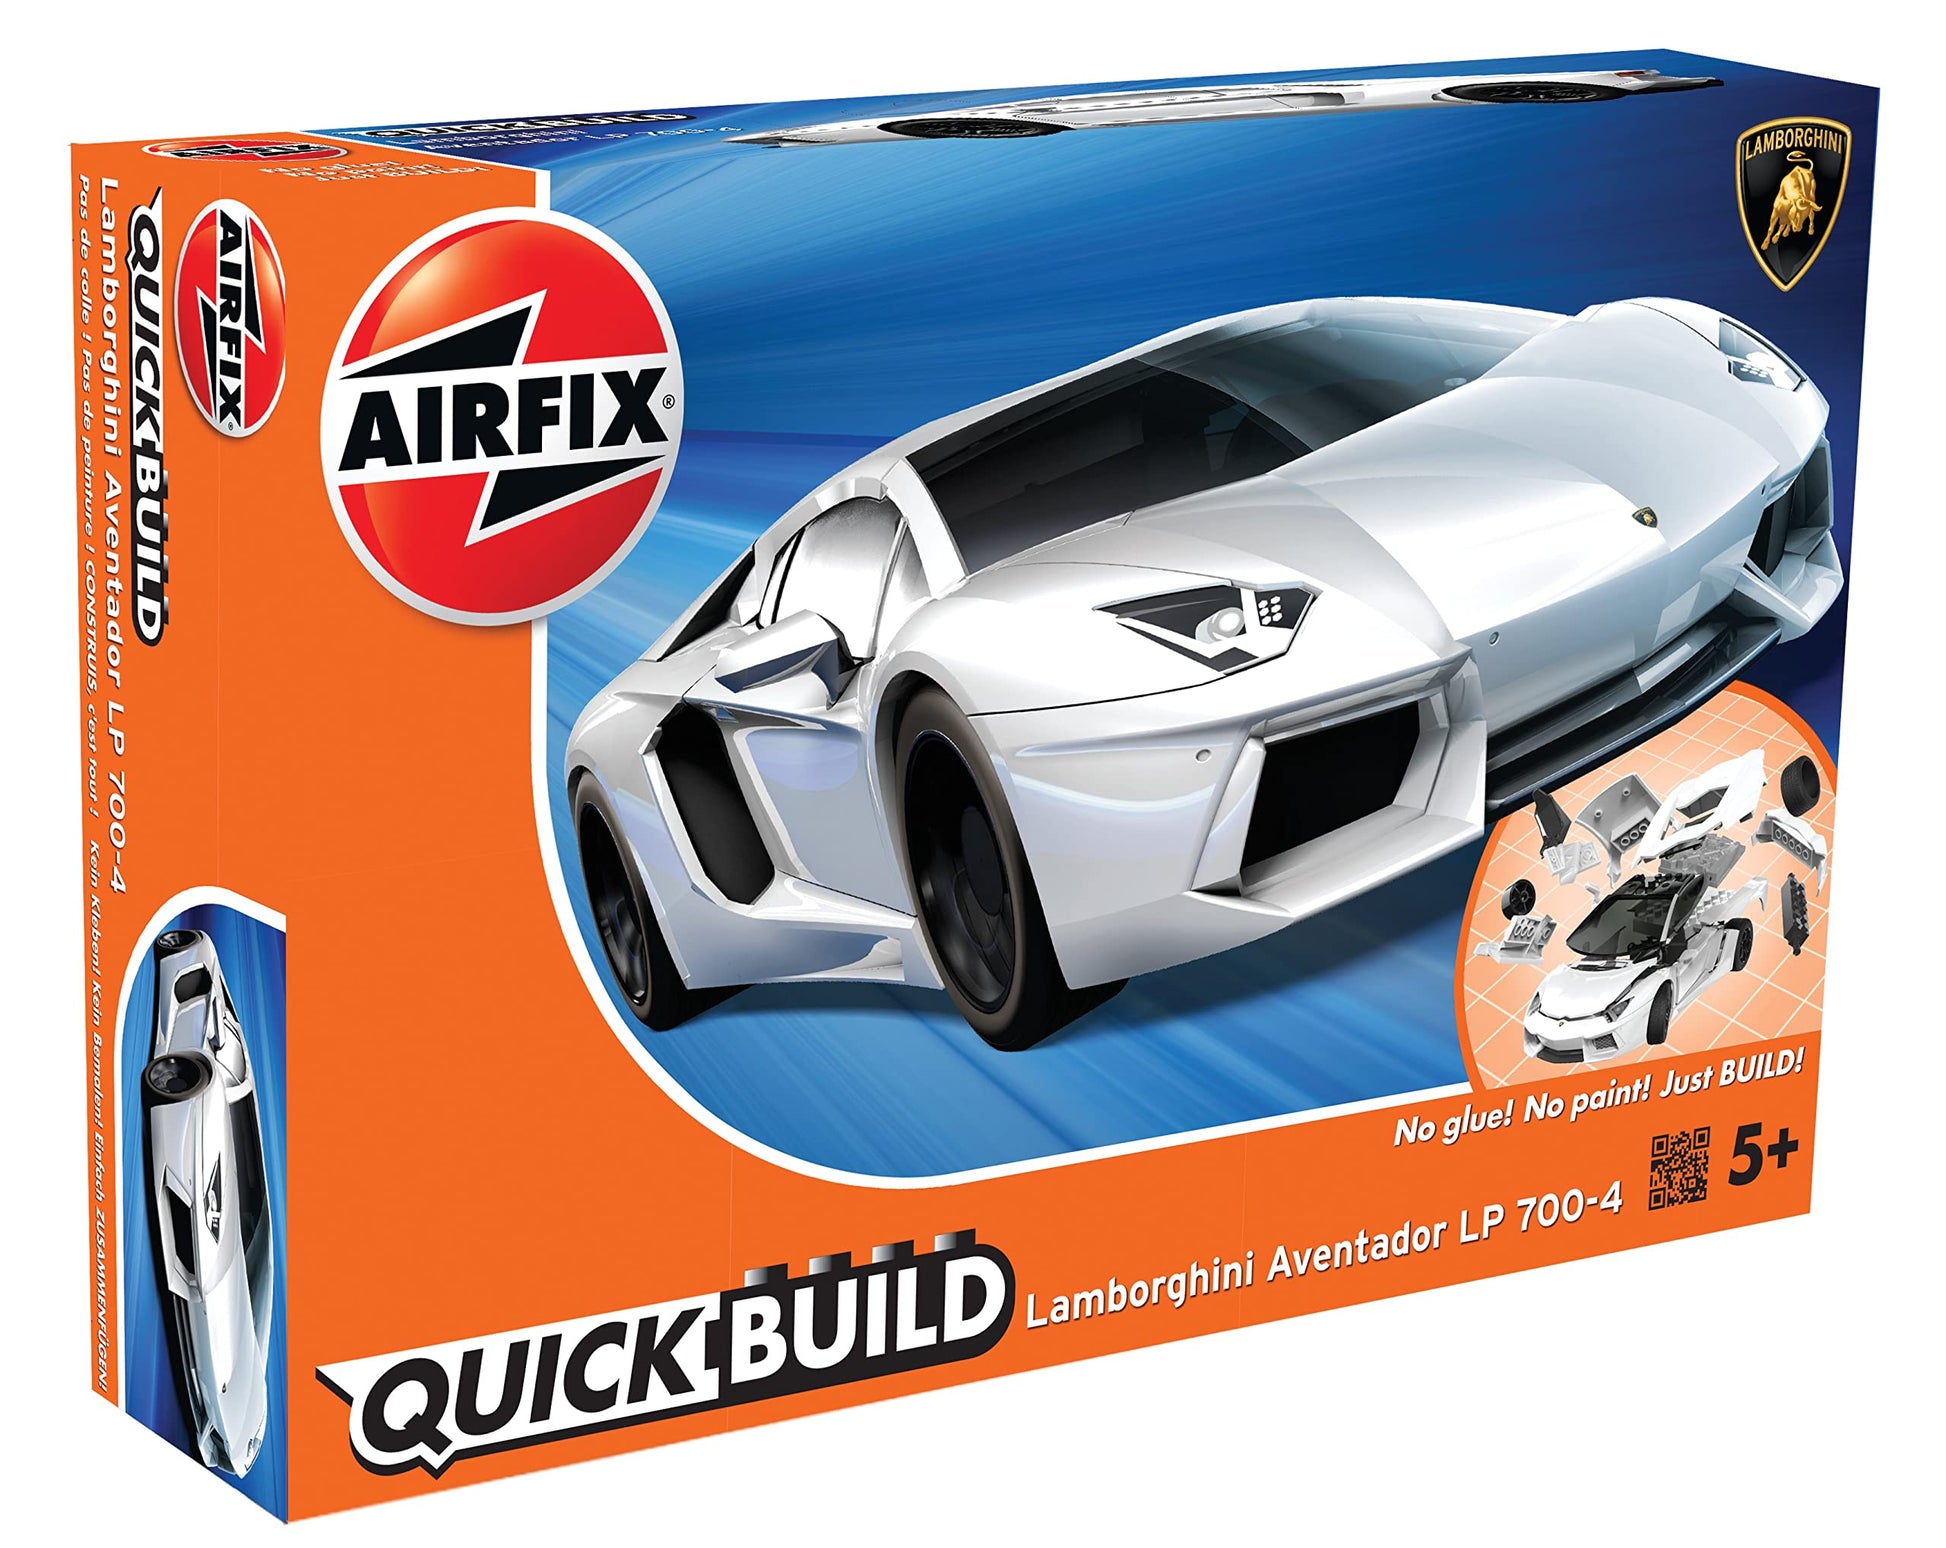 Airfix Quickbuild Lamborghini Aventador - J6019